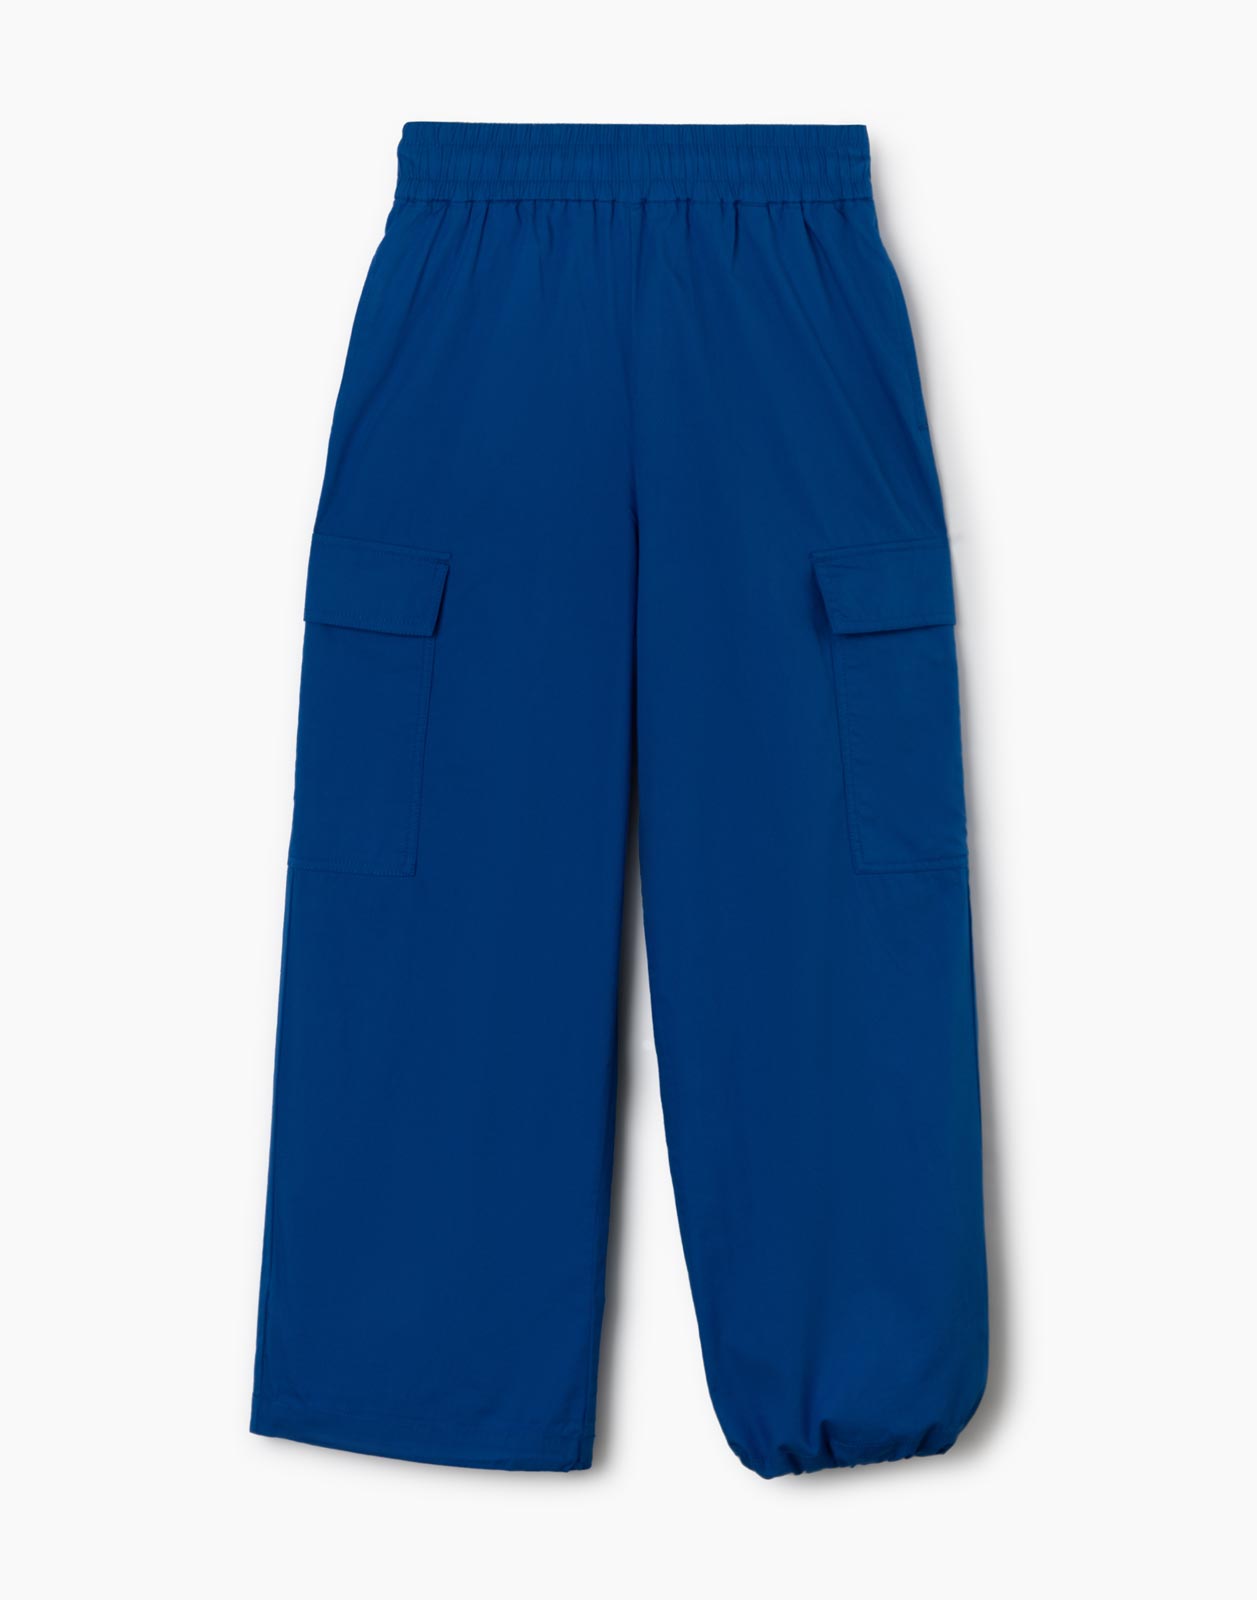 Синие брюки-трансформеры с карманами карго для девочки р.146